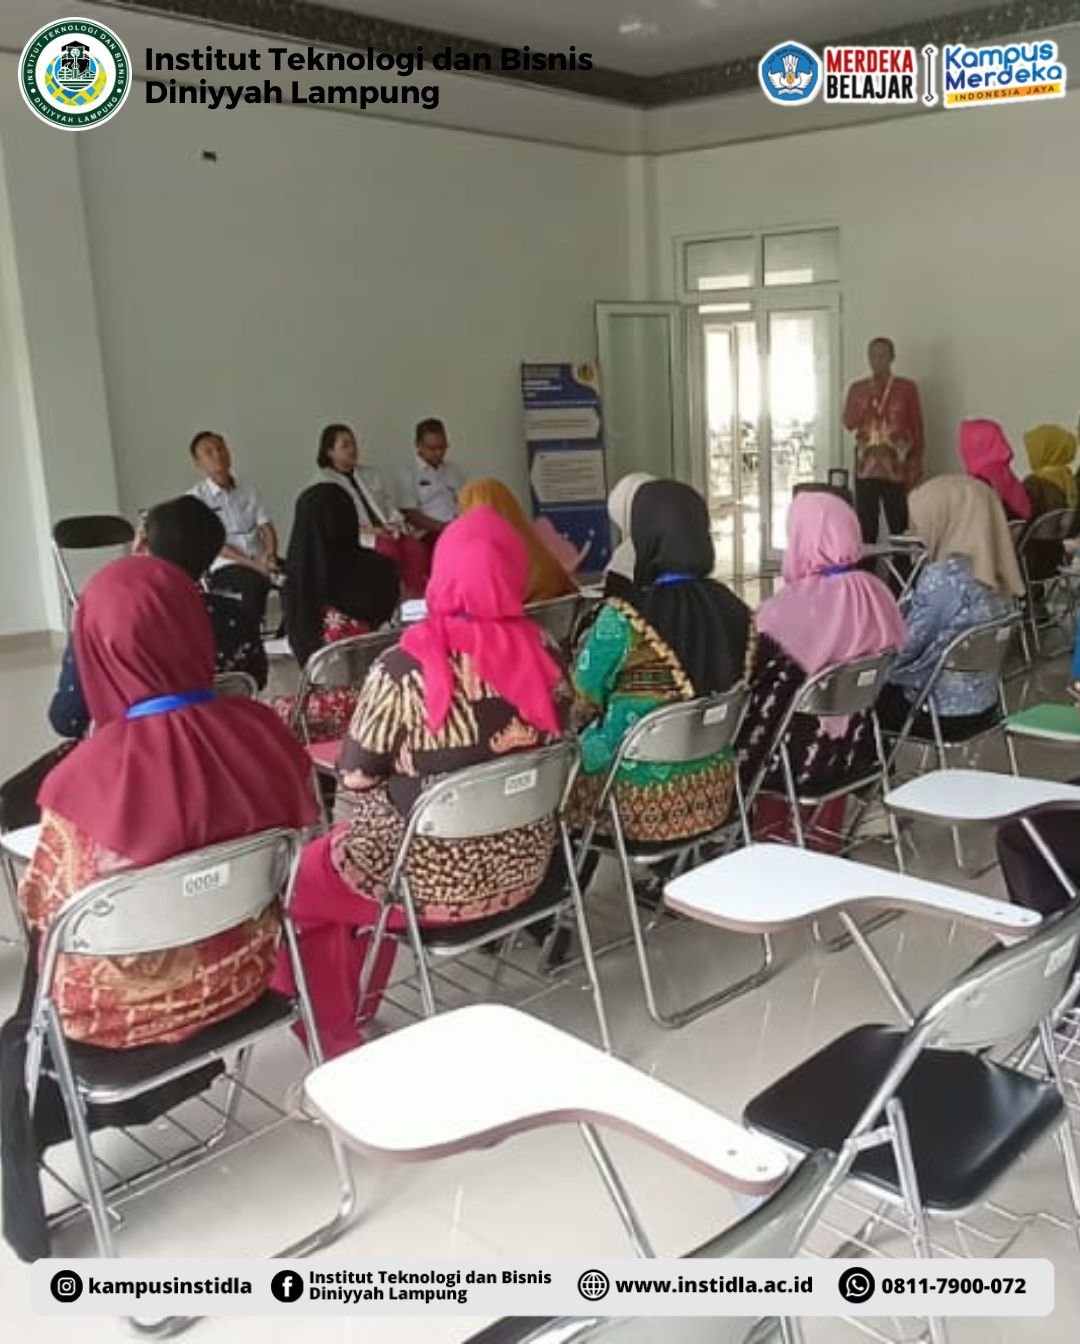 Kegiatan Pendampingan Kelompok 1 Program Guru Penggerak Angkatan 8 Wilayah Provinsi Lampung Kabupaten Pesawaran di Institut Teknologi dan Bisnis Diniyyah Lampung